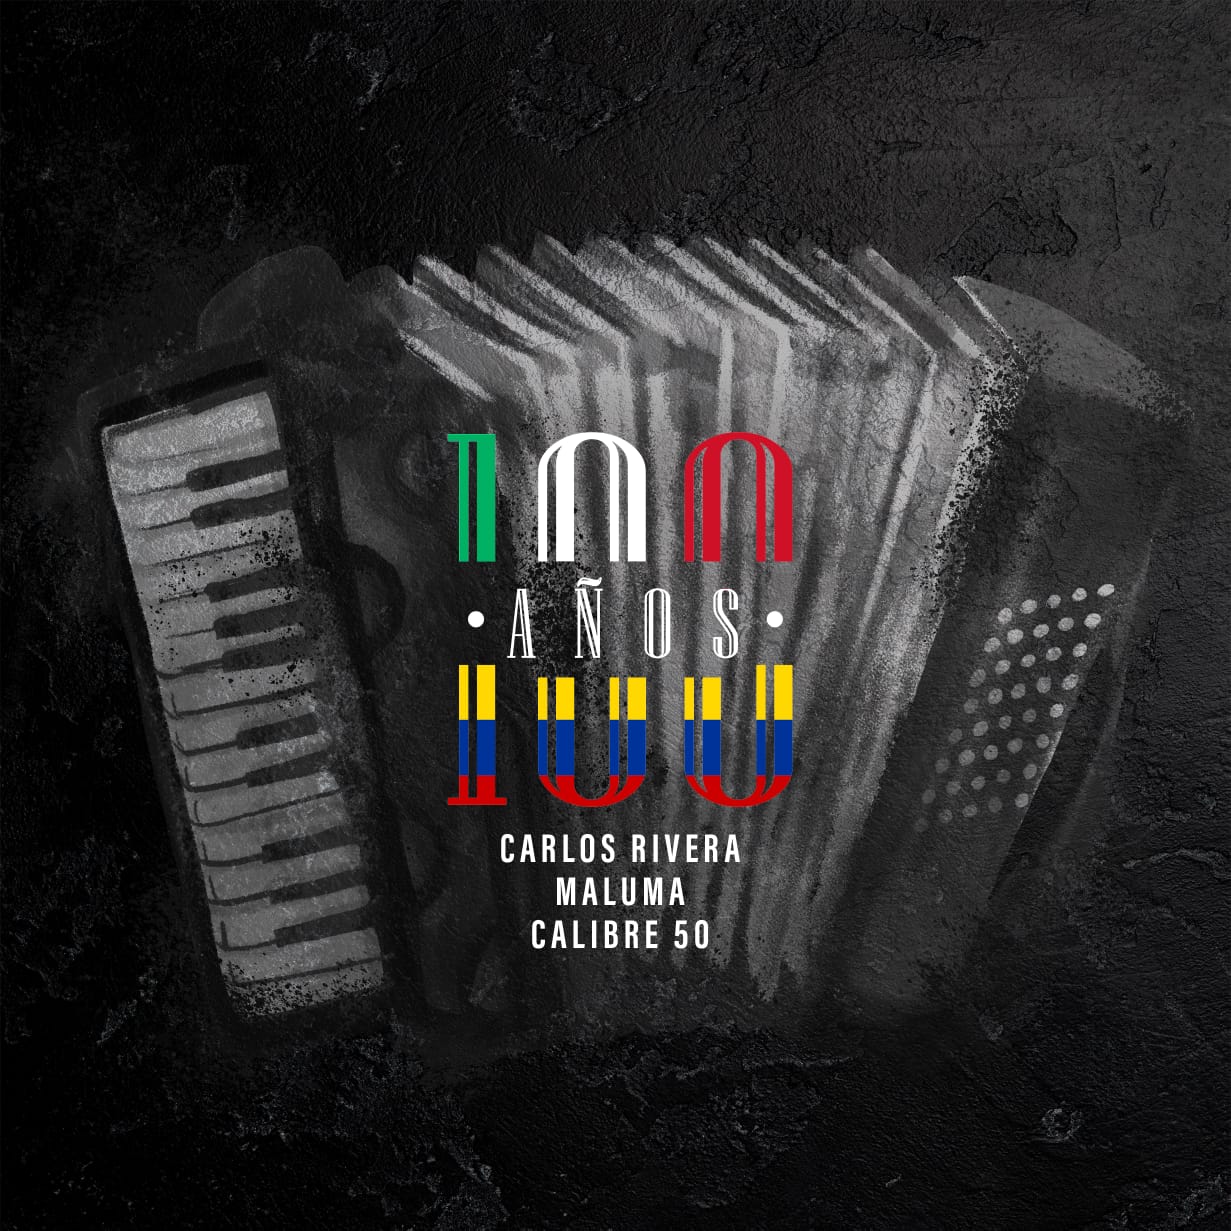 Carlos Rivera, Maluma y Calibre 50 lanzan nueva versión de “100 años”